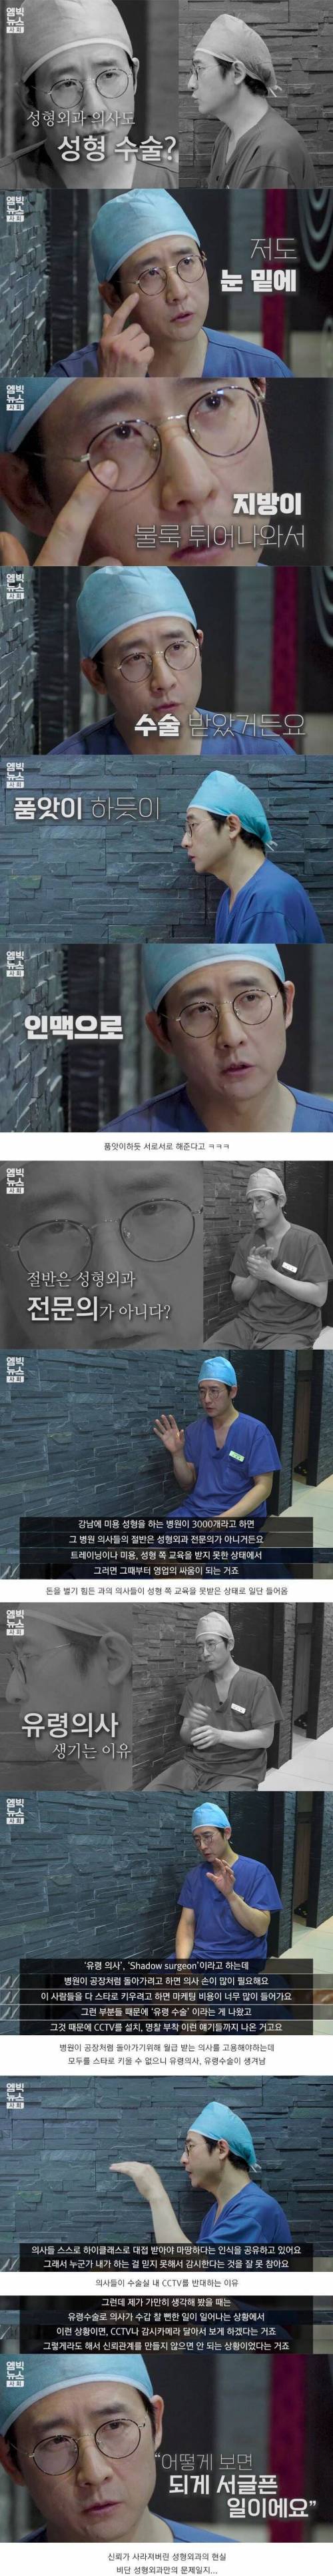 [스압] 강남에서 11년 근무한 성형외과 의사와 인터뷰